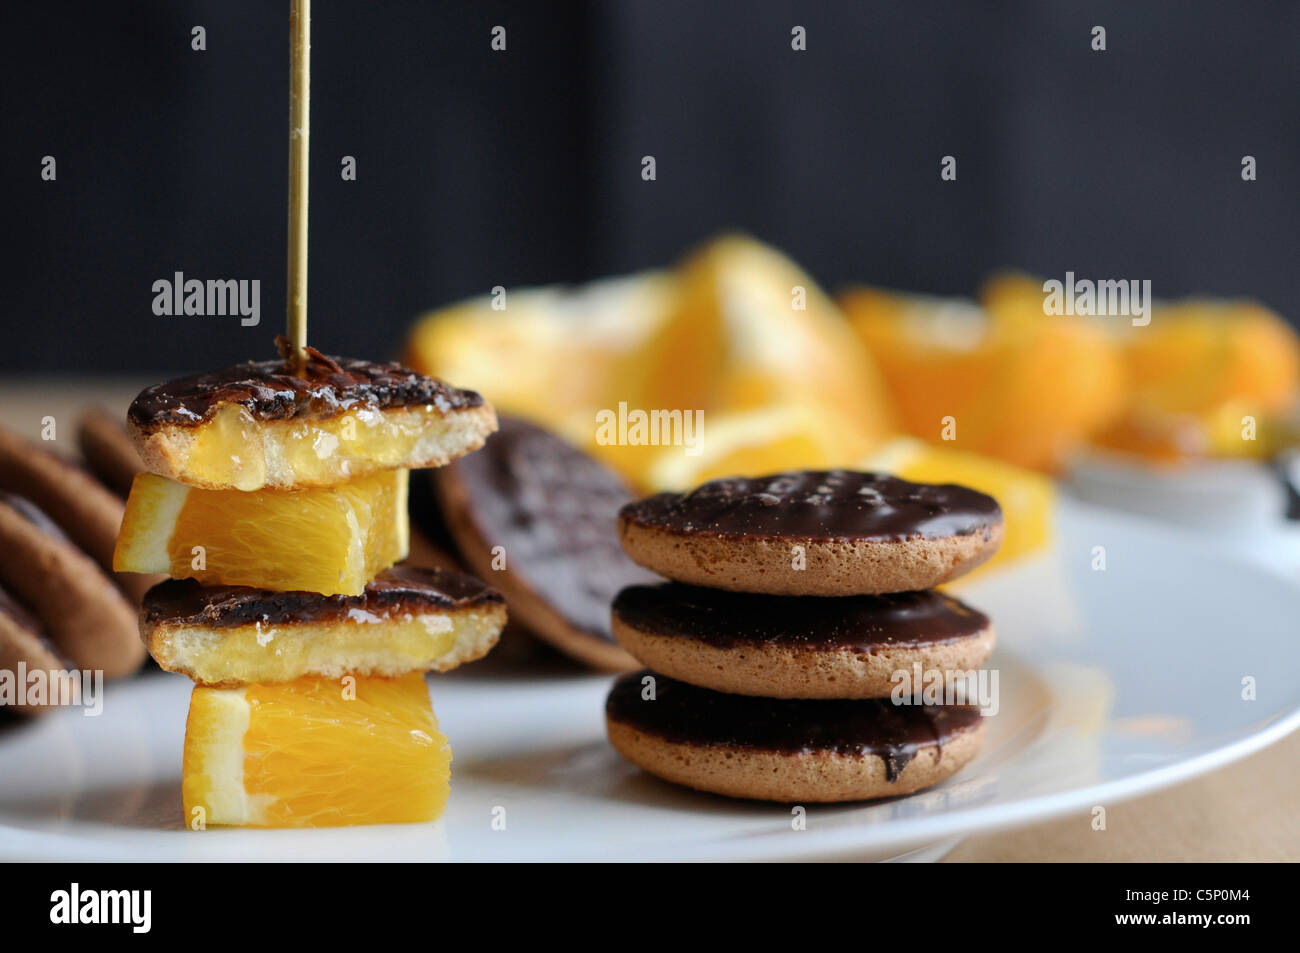 Les cookies au chocolat orange avec orange sur une brochette de Jaffa (gâteaux) Banque D'Images